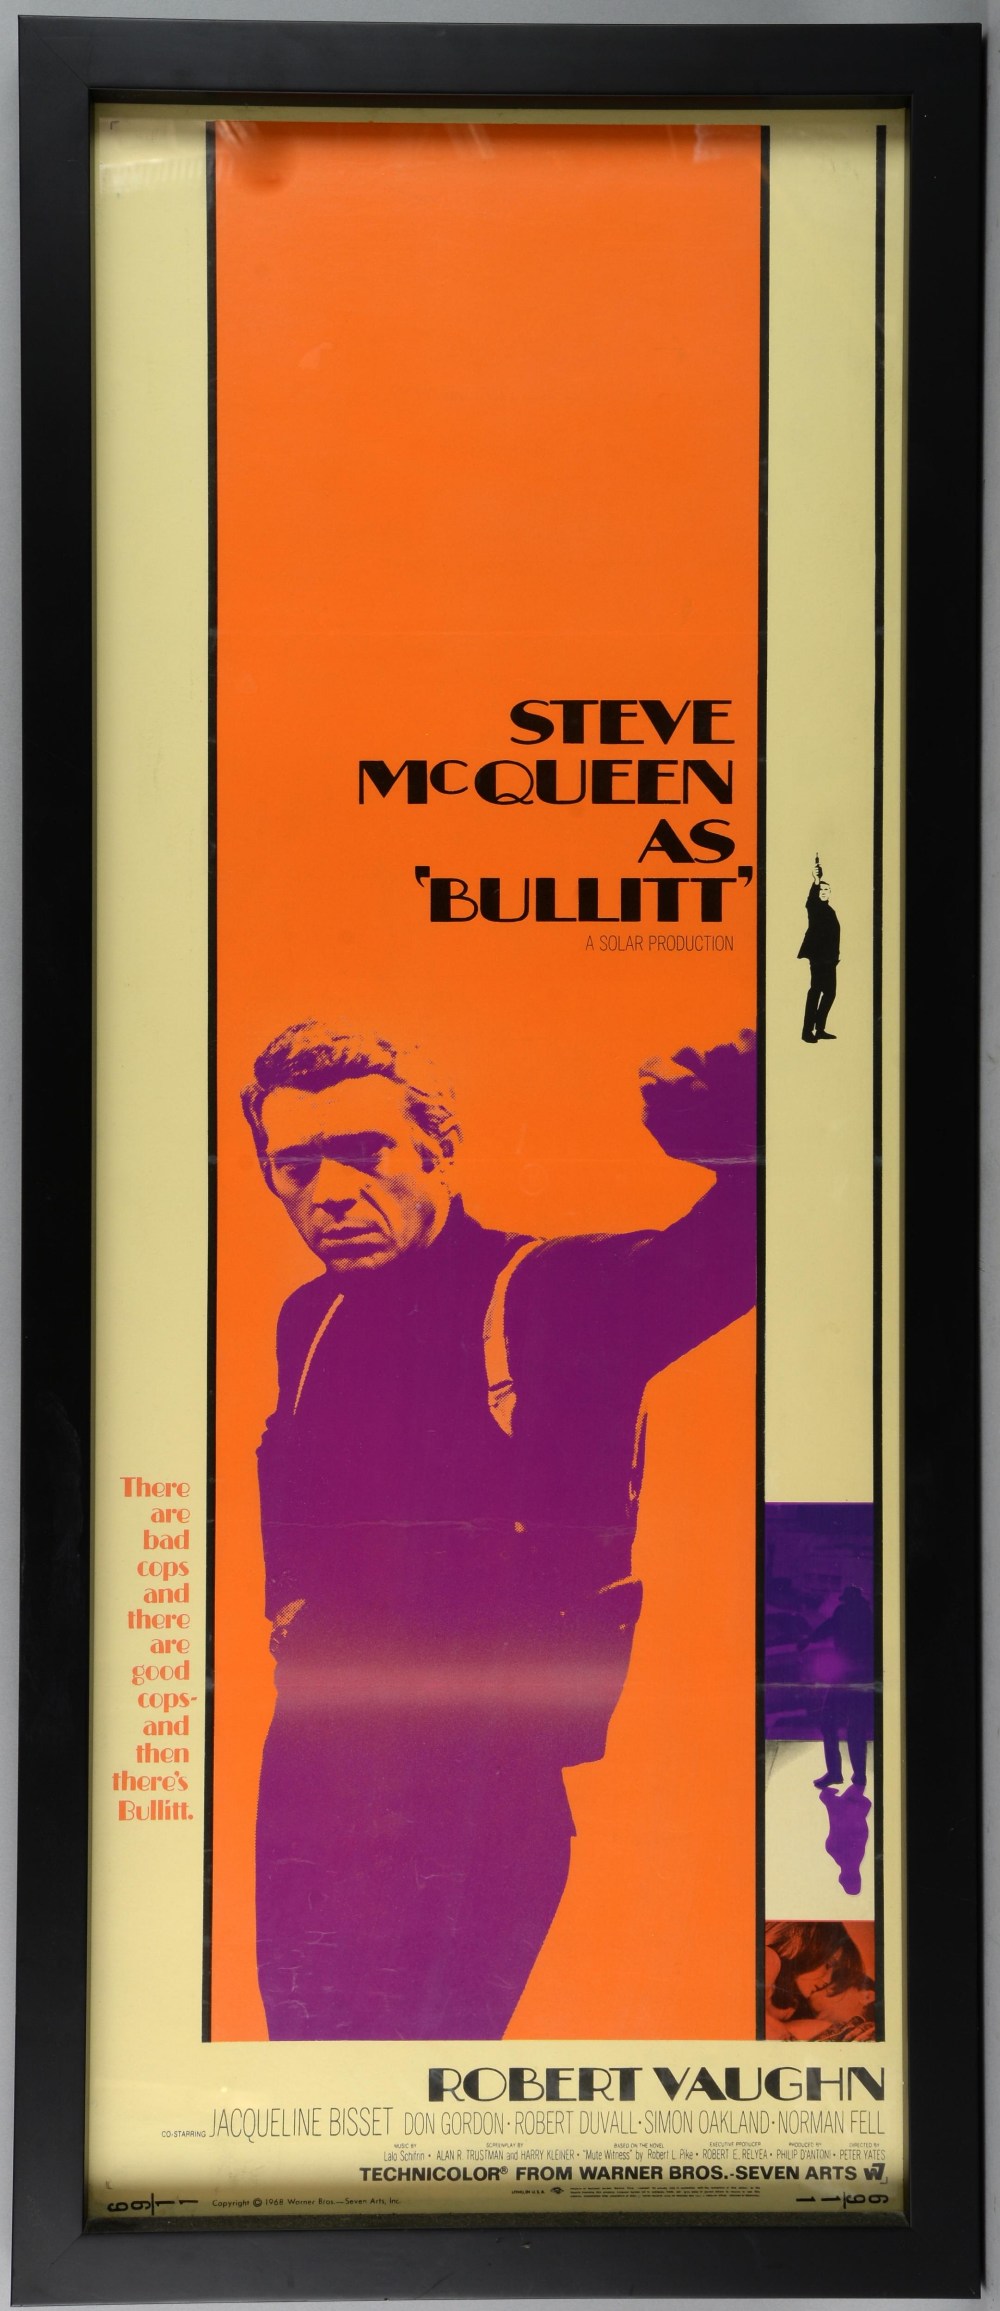 Bullitt (1969) US Insert film poster, starring Steve McQueen, Warner Bros - Seven Arts, framed, 14 x